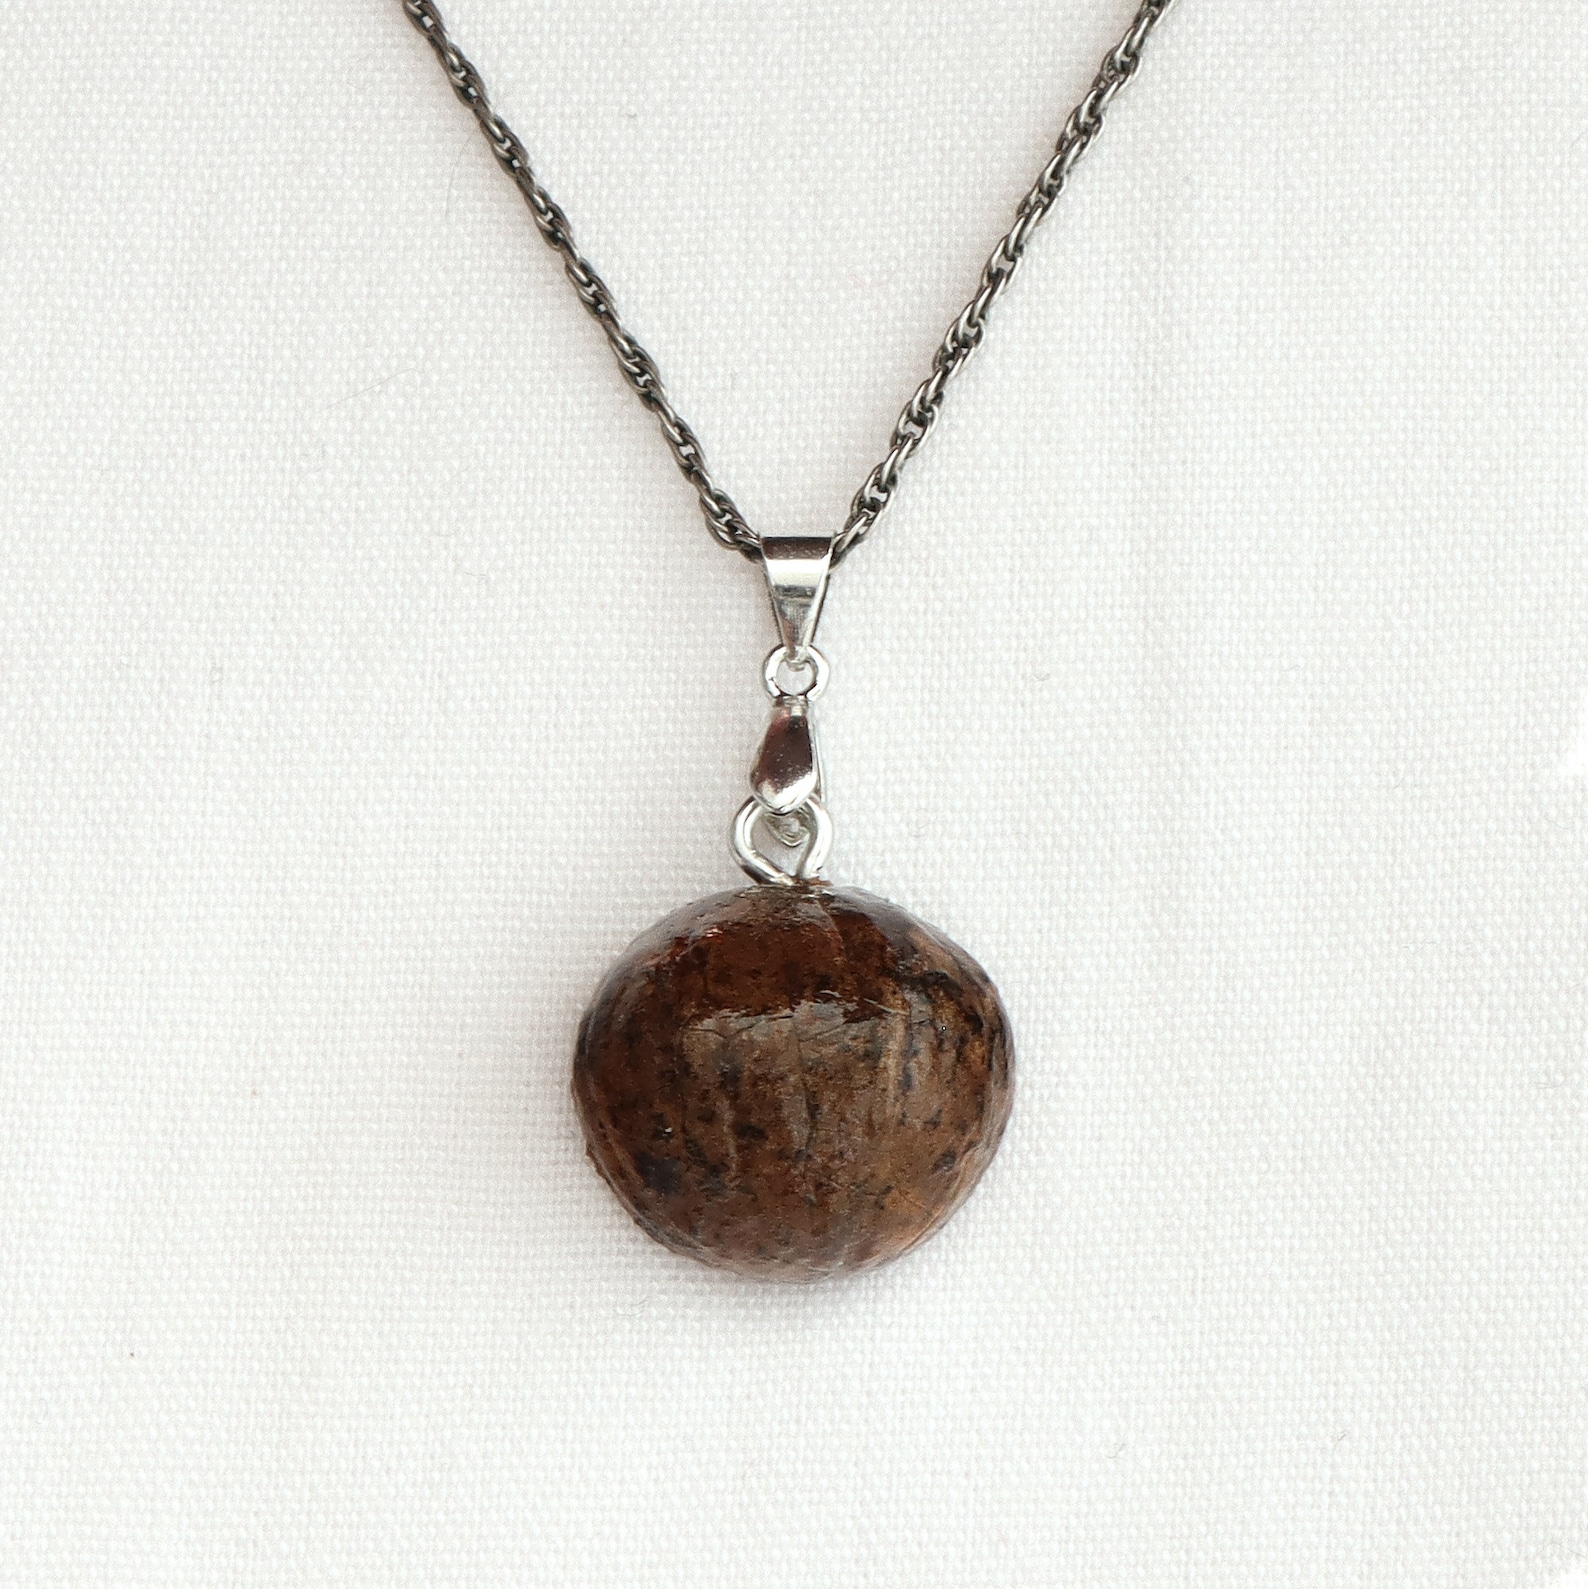 Bohemian Heart Necklace Pendant black walnut shell | Etsy